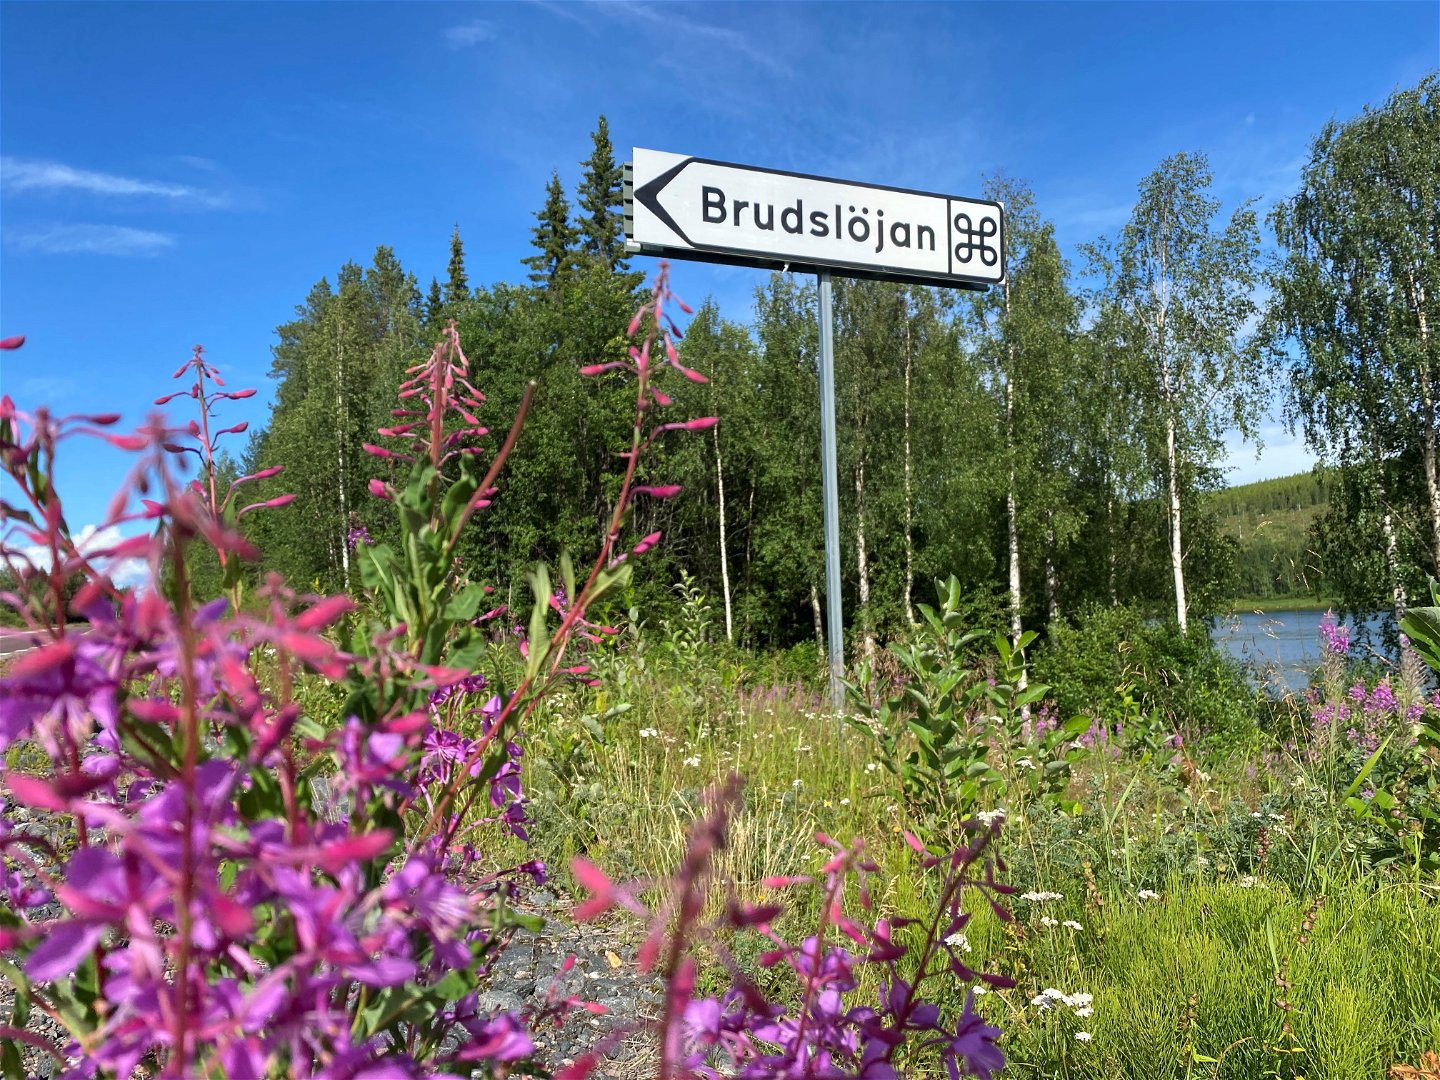 Längs med väg 835 finns denna skylt som pekar mot Brudslöjan